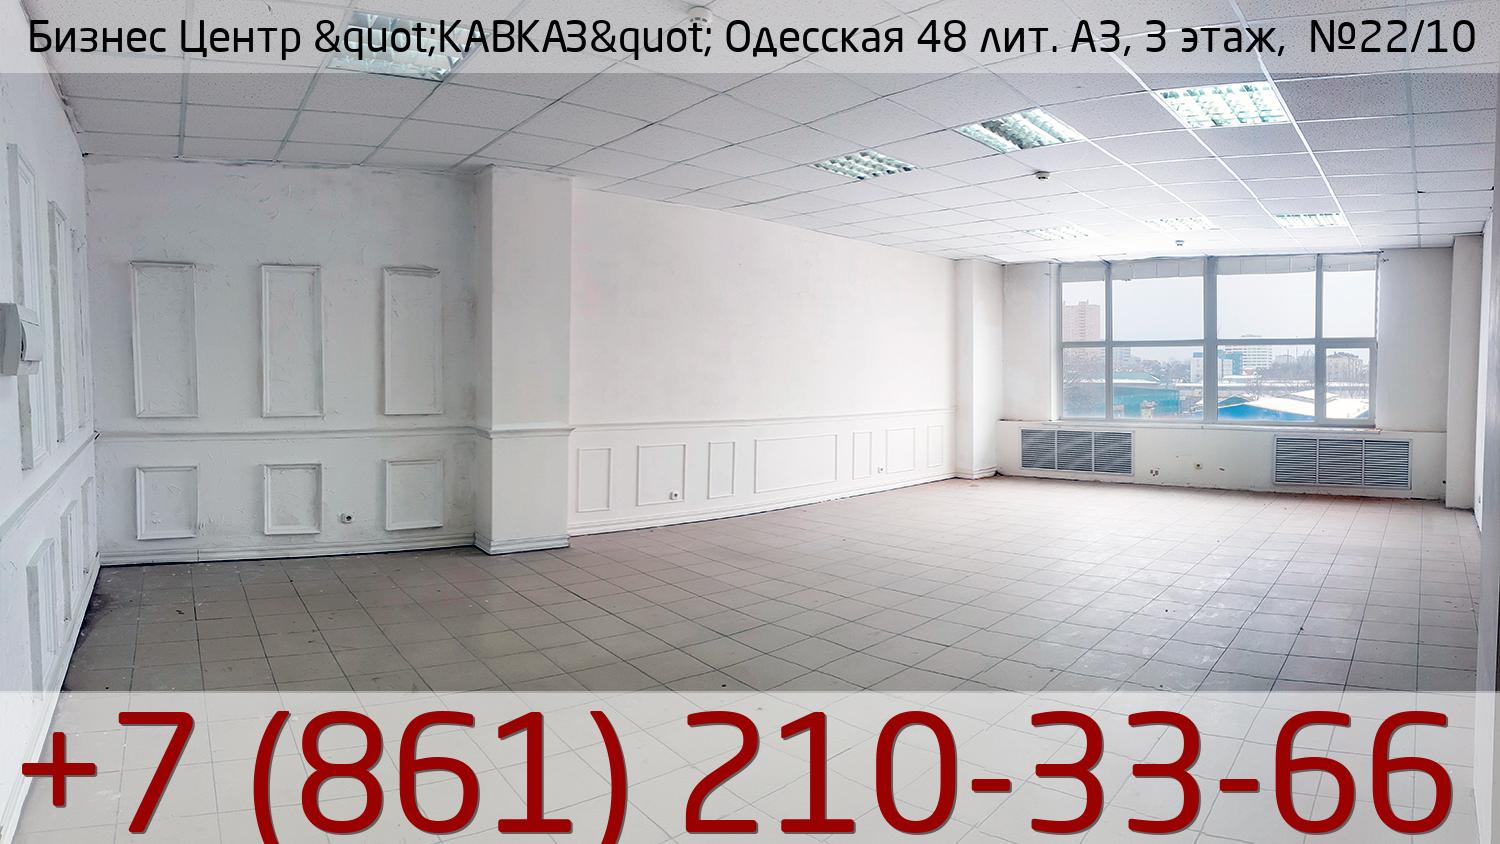 Бизнес Центр &quot;КАВКАЗ&quot; Одесская 48 лит. А3, 3 этаж,  №22/10, стоимость: 26 950р.